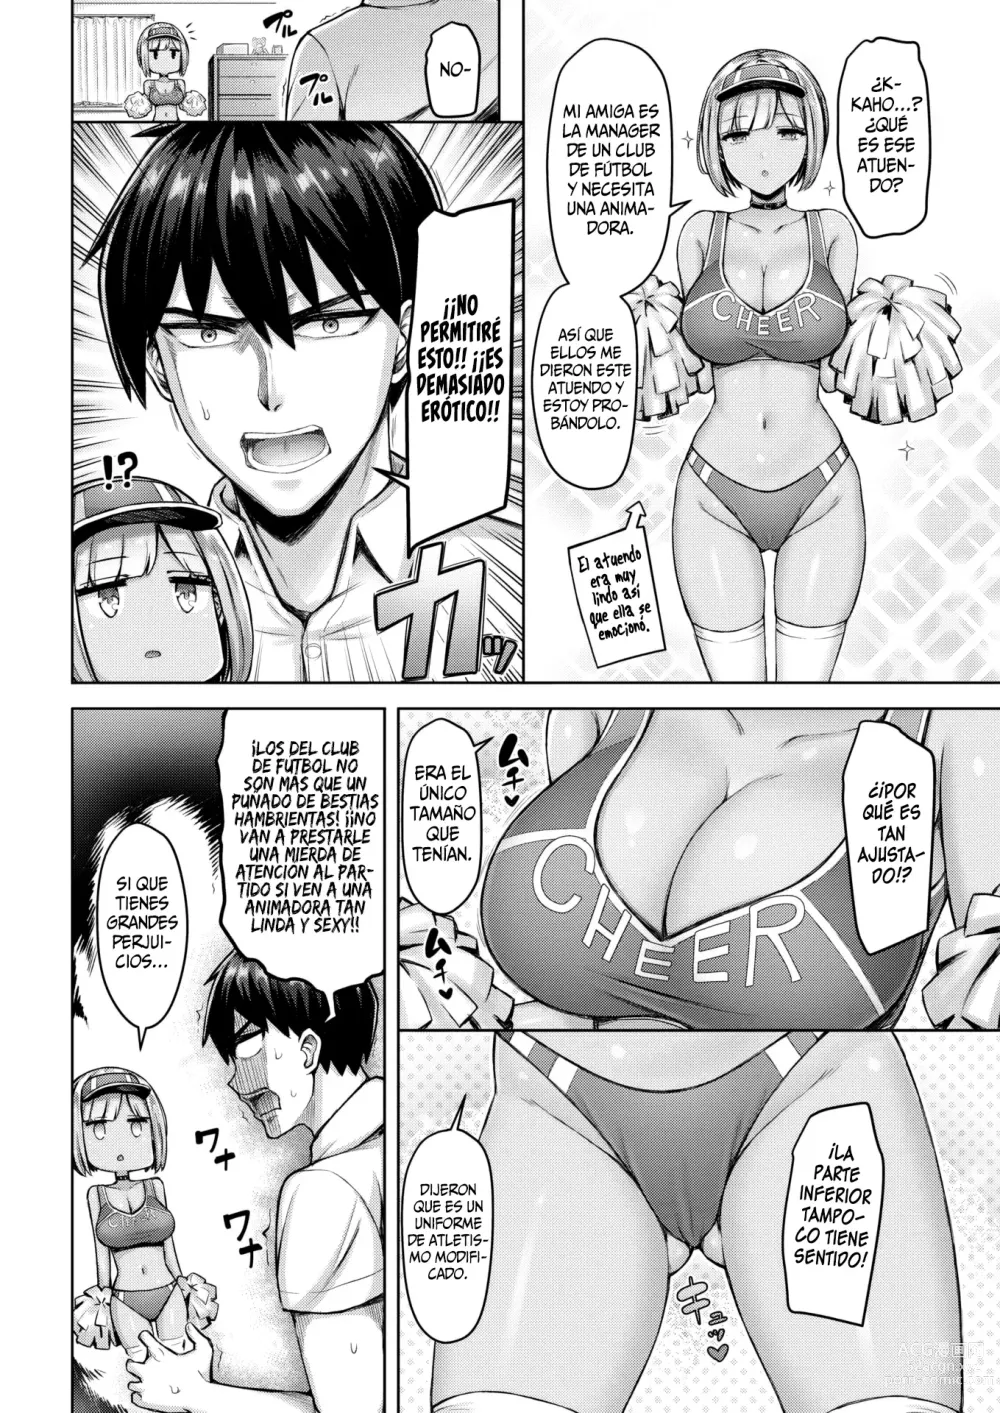 Page 4 of manga Onii-chan wa Yurusanzo!!